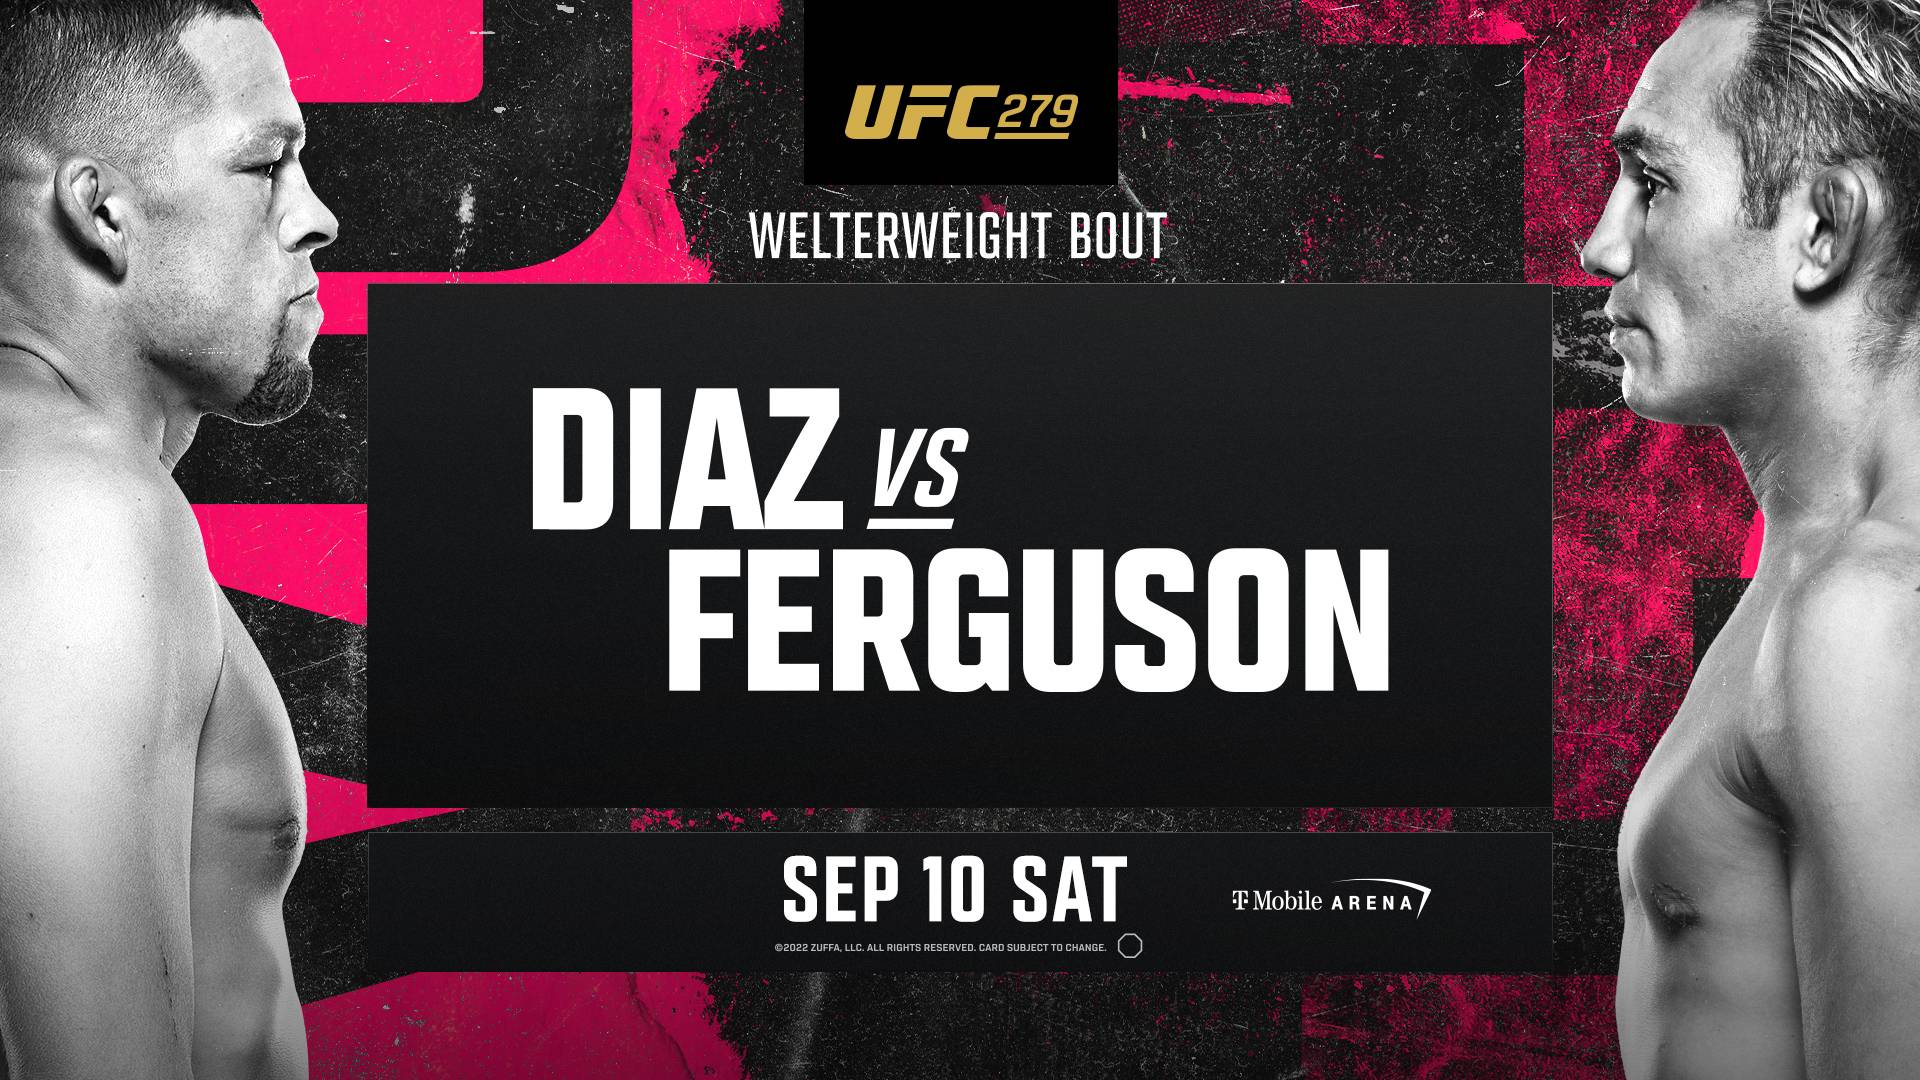 Diaz vs Ferguson UFC 279 Main Event